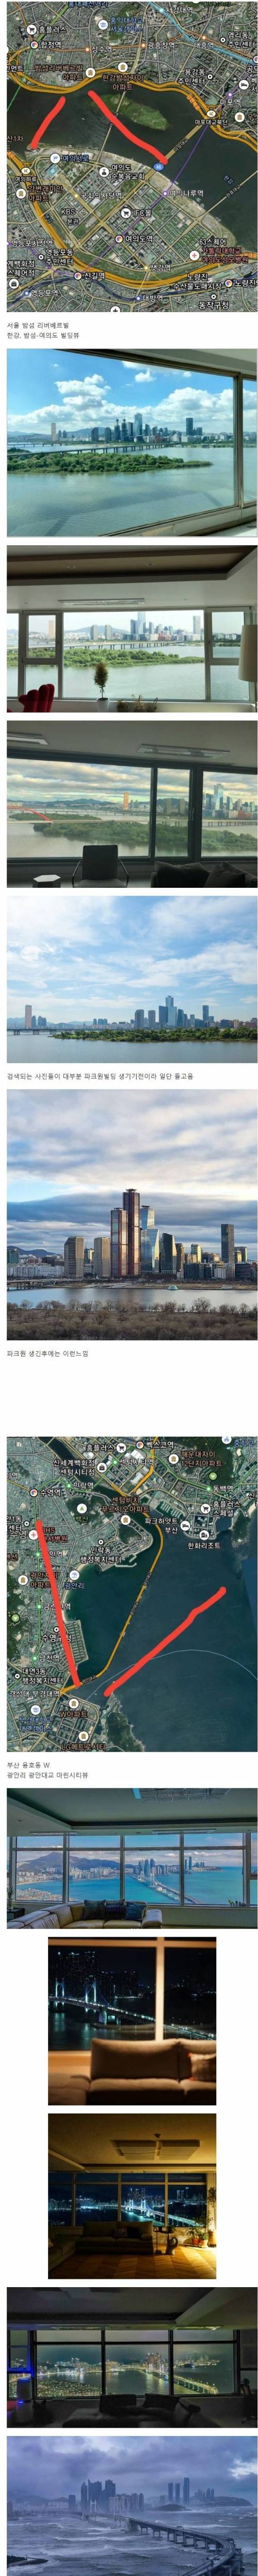 서울과 부산에서 최고의 뷰로 꼽히는 아파트.jpg